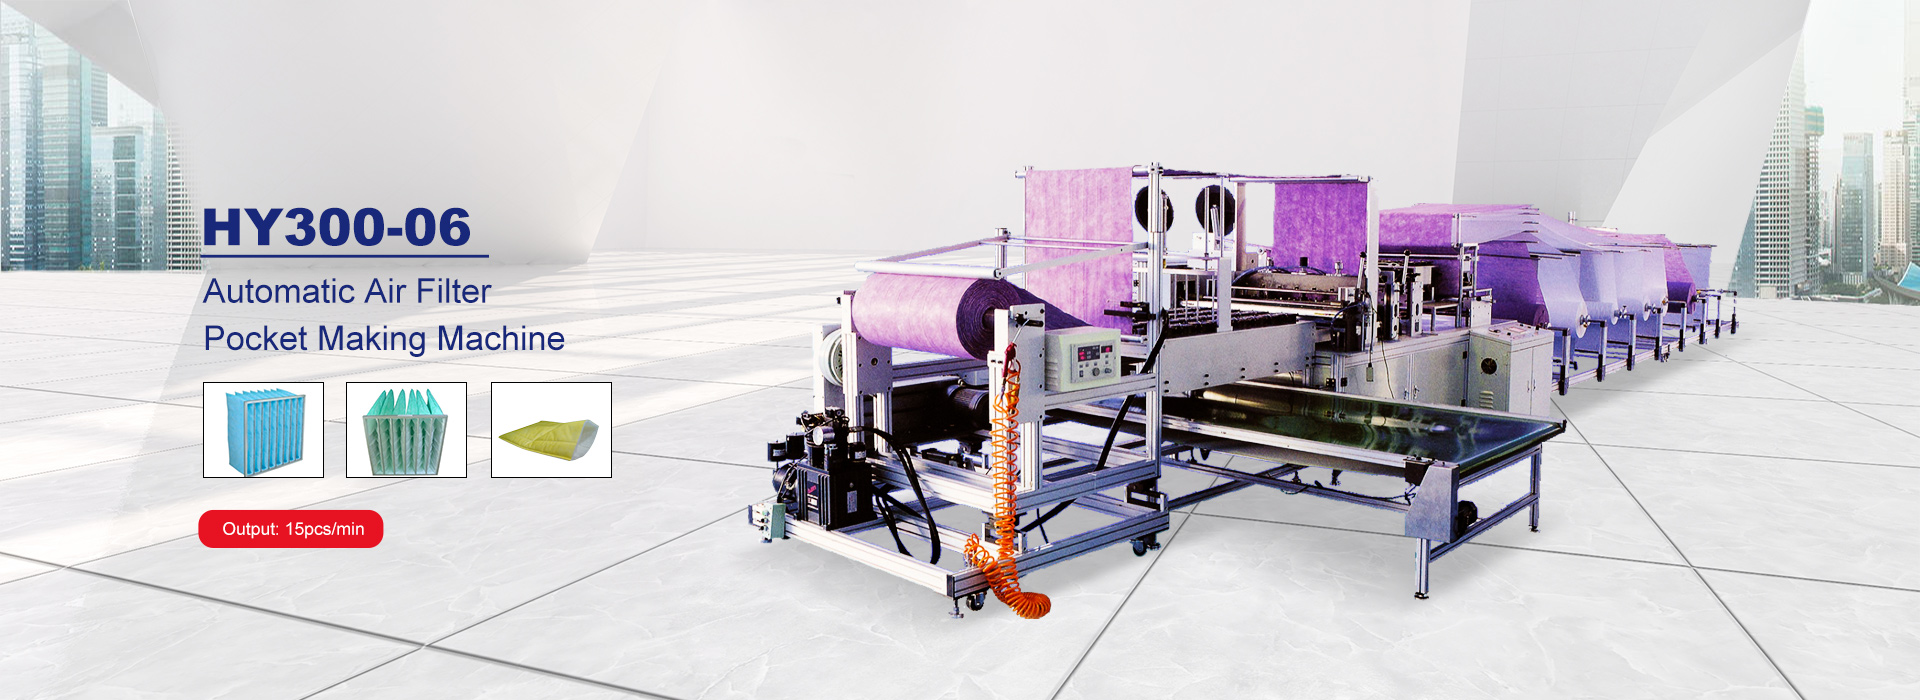 Ši mašina gali efektyviai gaminti oro filtro maišelį, nuo žaliavų šerti gatavų produktų gali būti automatinis baigtas, <br/> ir tai yra sutaupyti tiek laiko ir darbo, tvarkinga ir kiekvienas viduje erdvė gali būti reguliuojamas.